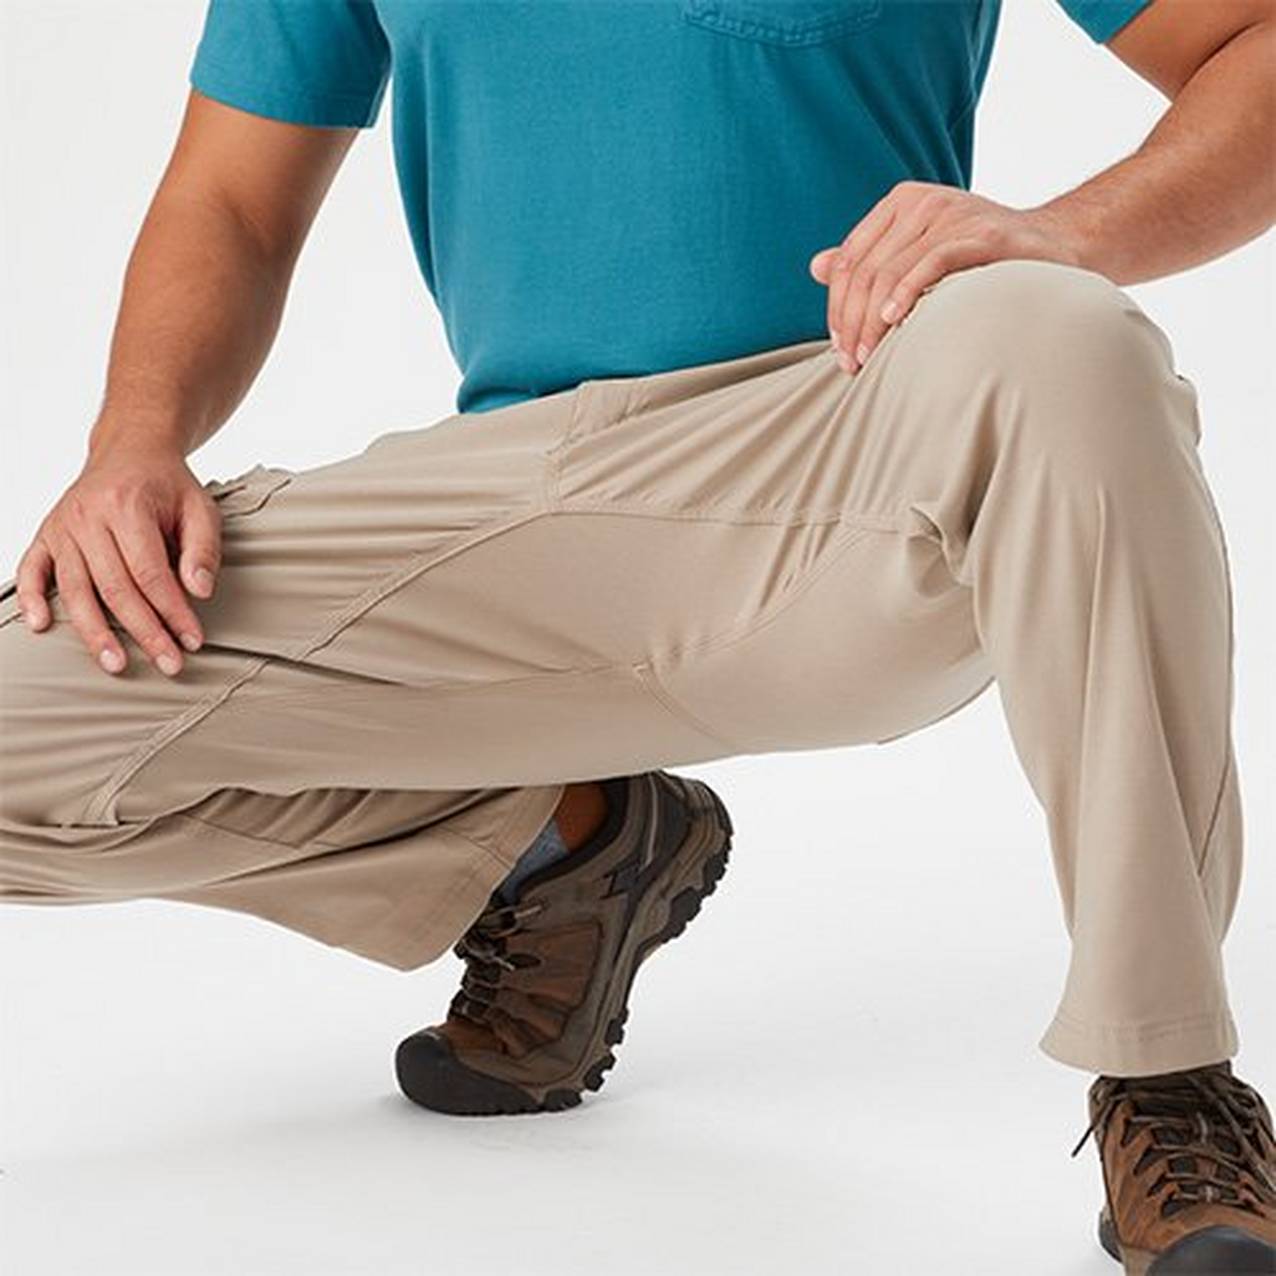 Image of man crouching 